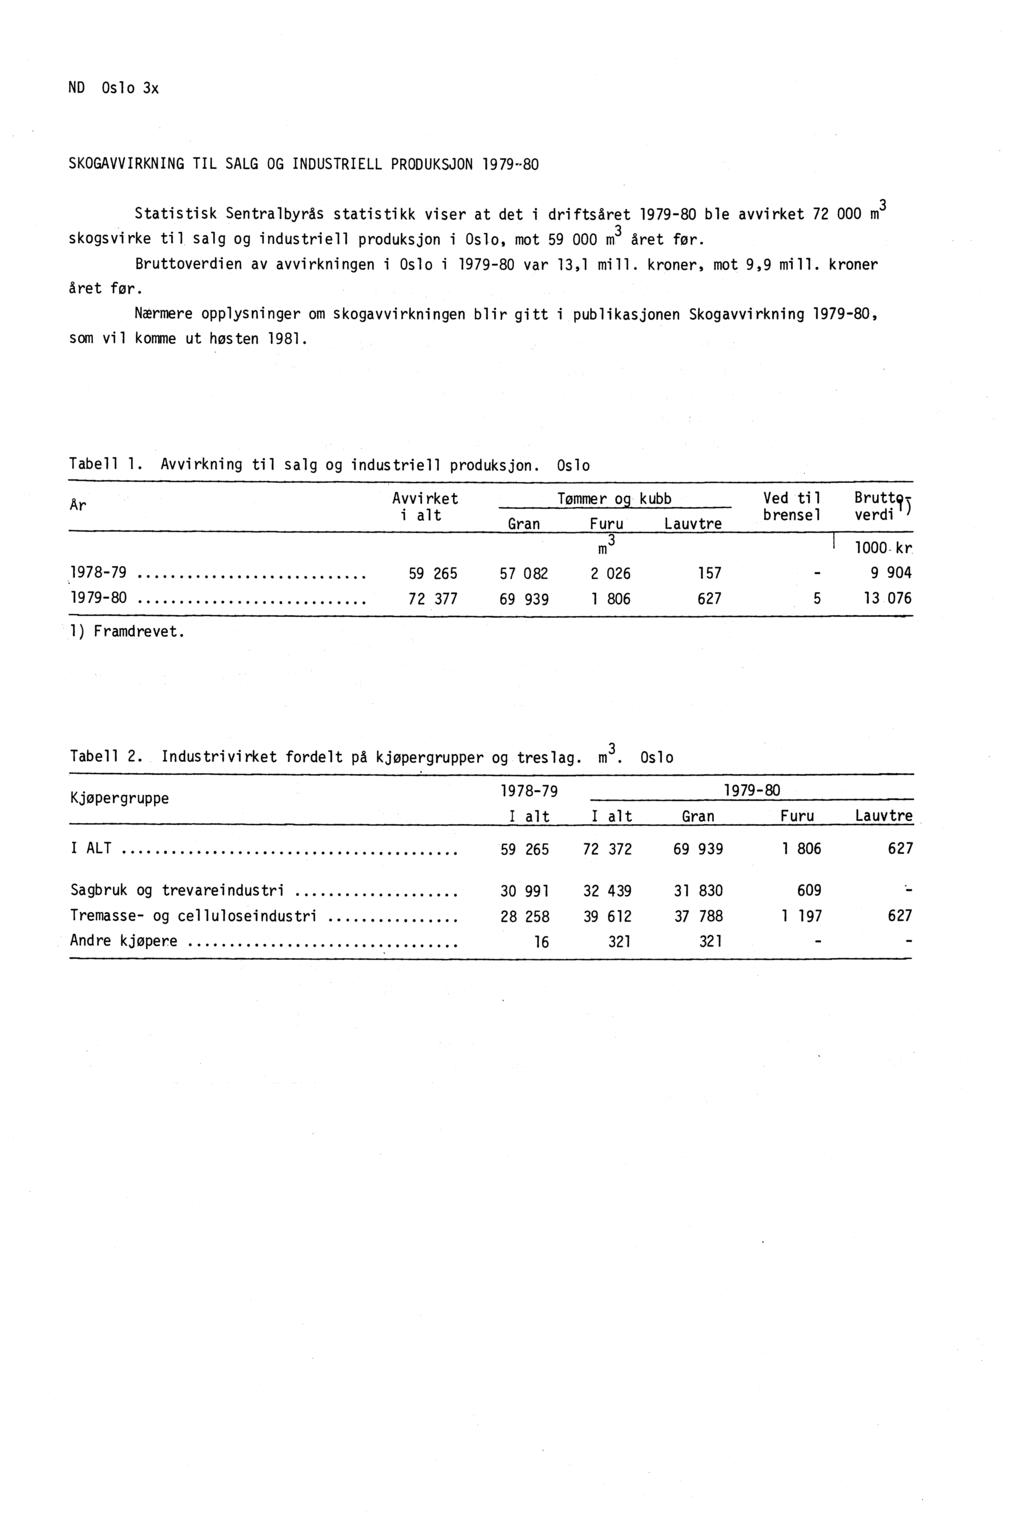 ND Oslo 3x SKOGAVVIRKNING TIL SALG OG INDUSTRIELL PRODUKSJON 1979-80 Statistisk Sentralbyrås statistikk viser at det i driftsåret 1979-80 ble avvirket 72 000 m 3 skogsvirke til salg og industriell